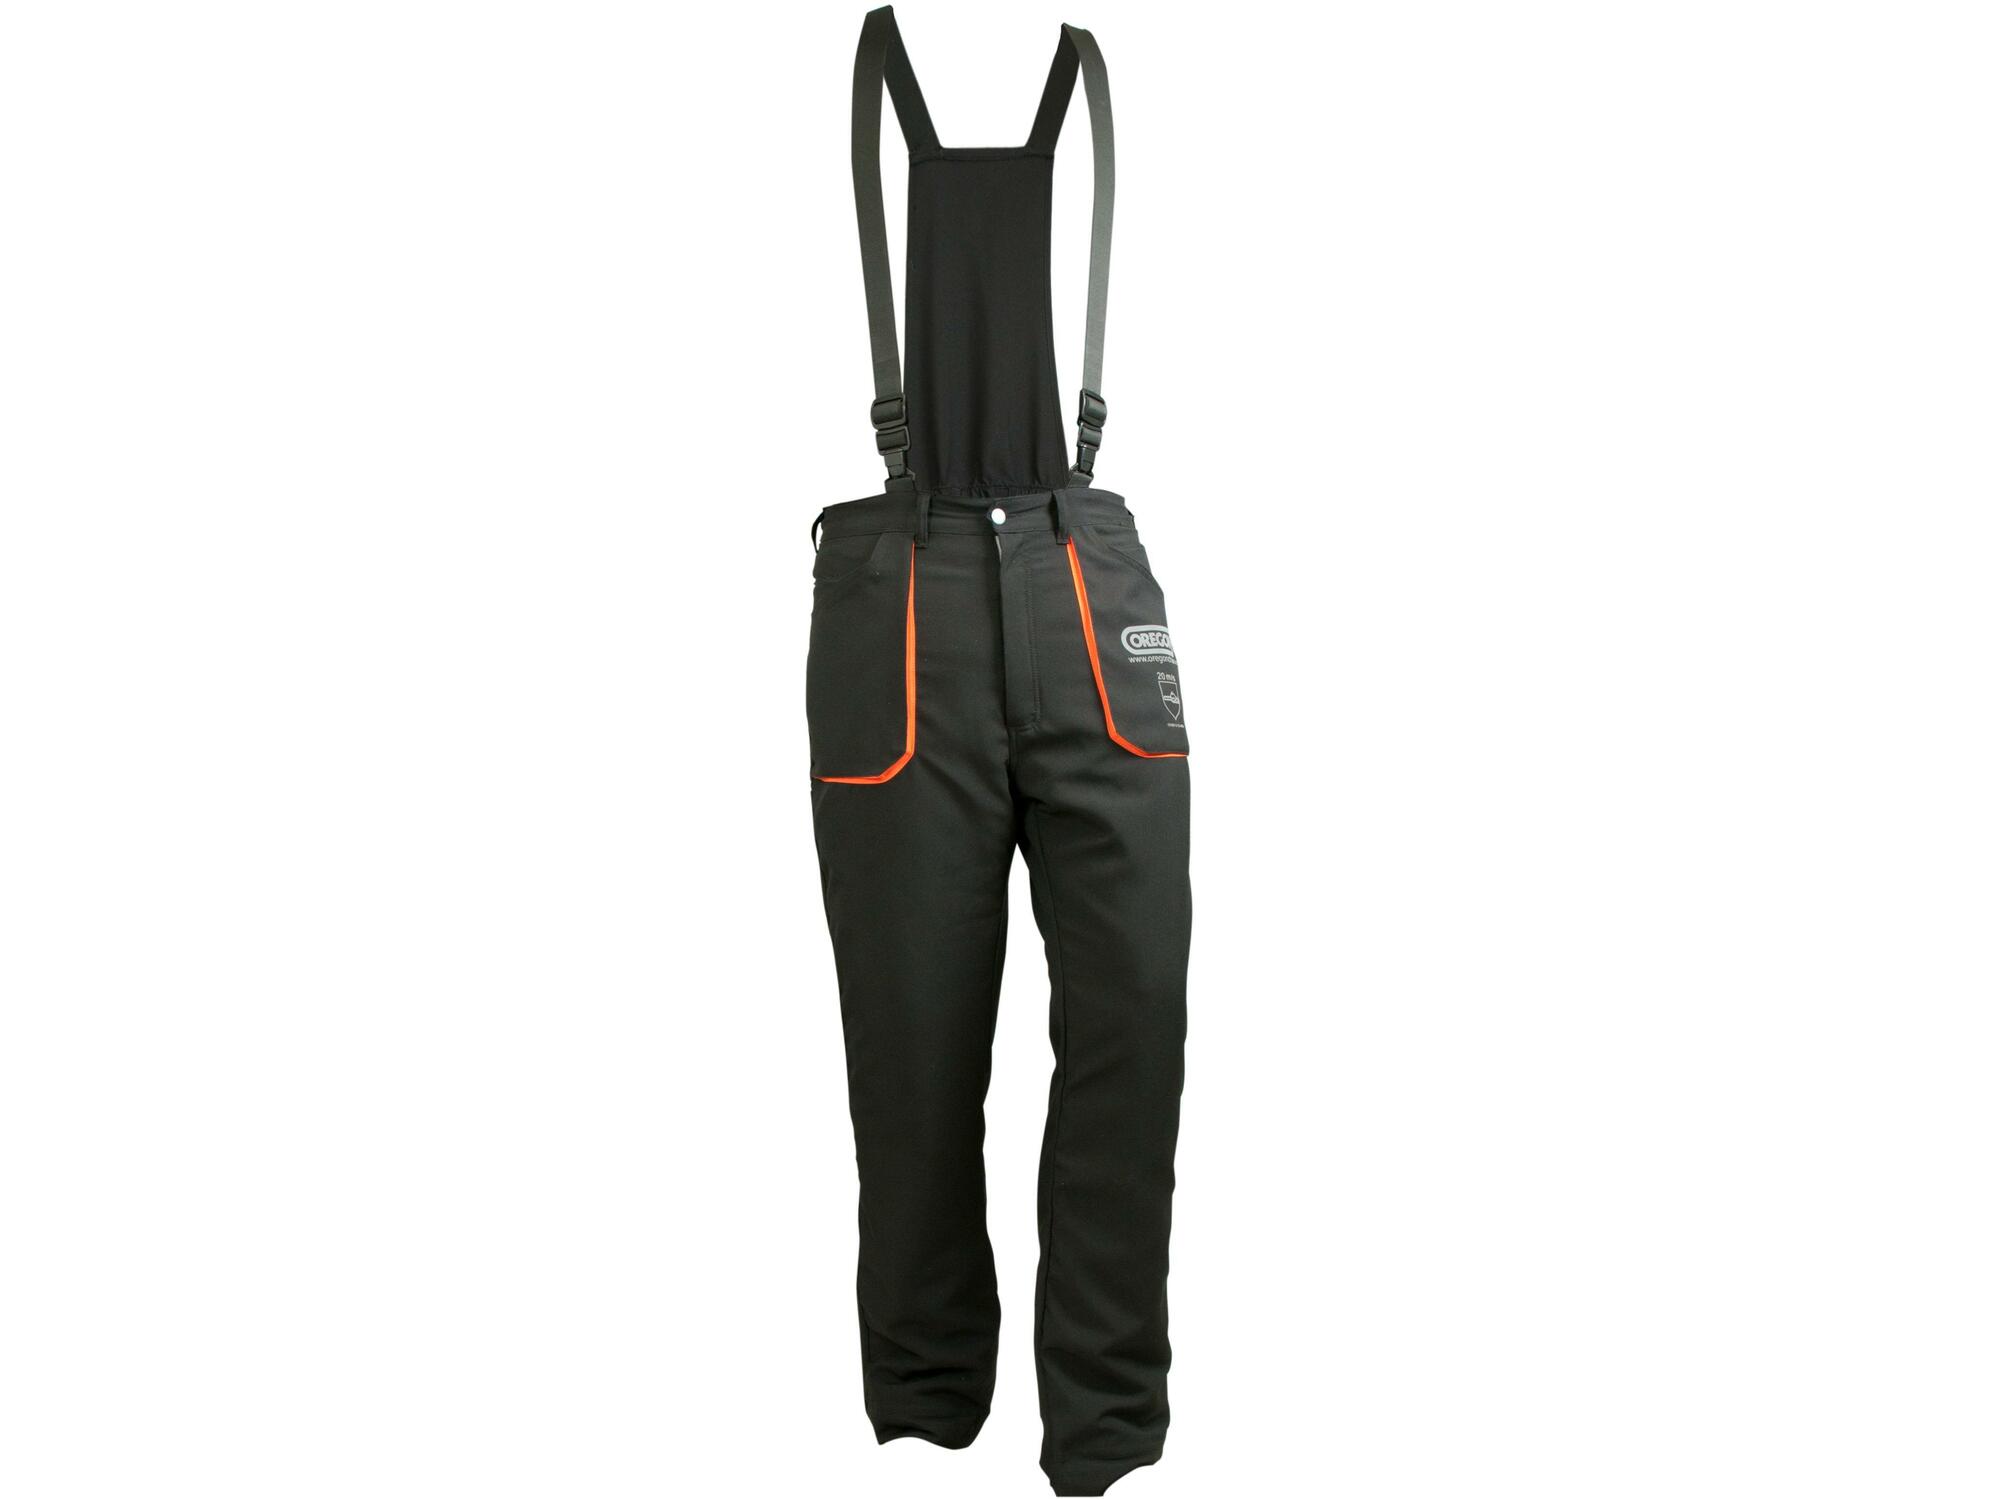 OREGON zaščitne hlače z naramnicami YUKON št. 42/44 OR 295445/S